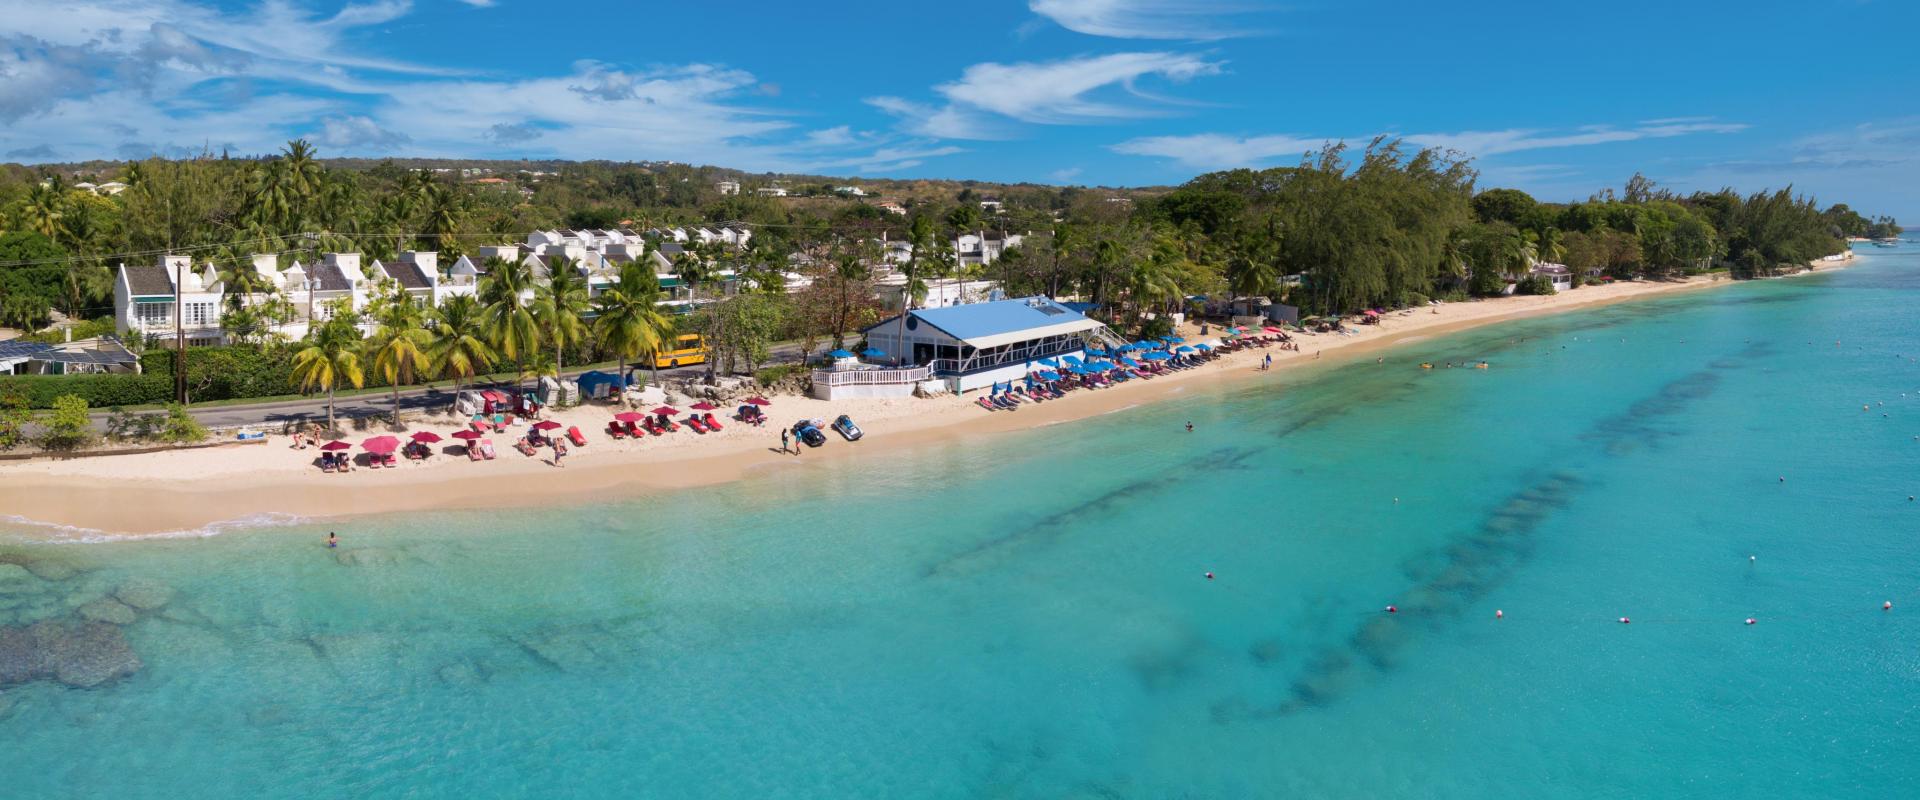 Forest Hills 25 Barbados Holiday Rental Royal Westmoreland Mullins Bay Beach Club